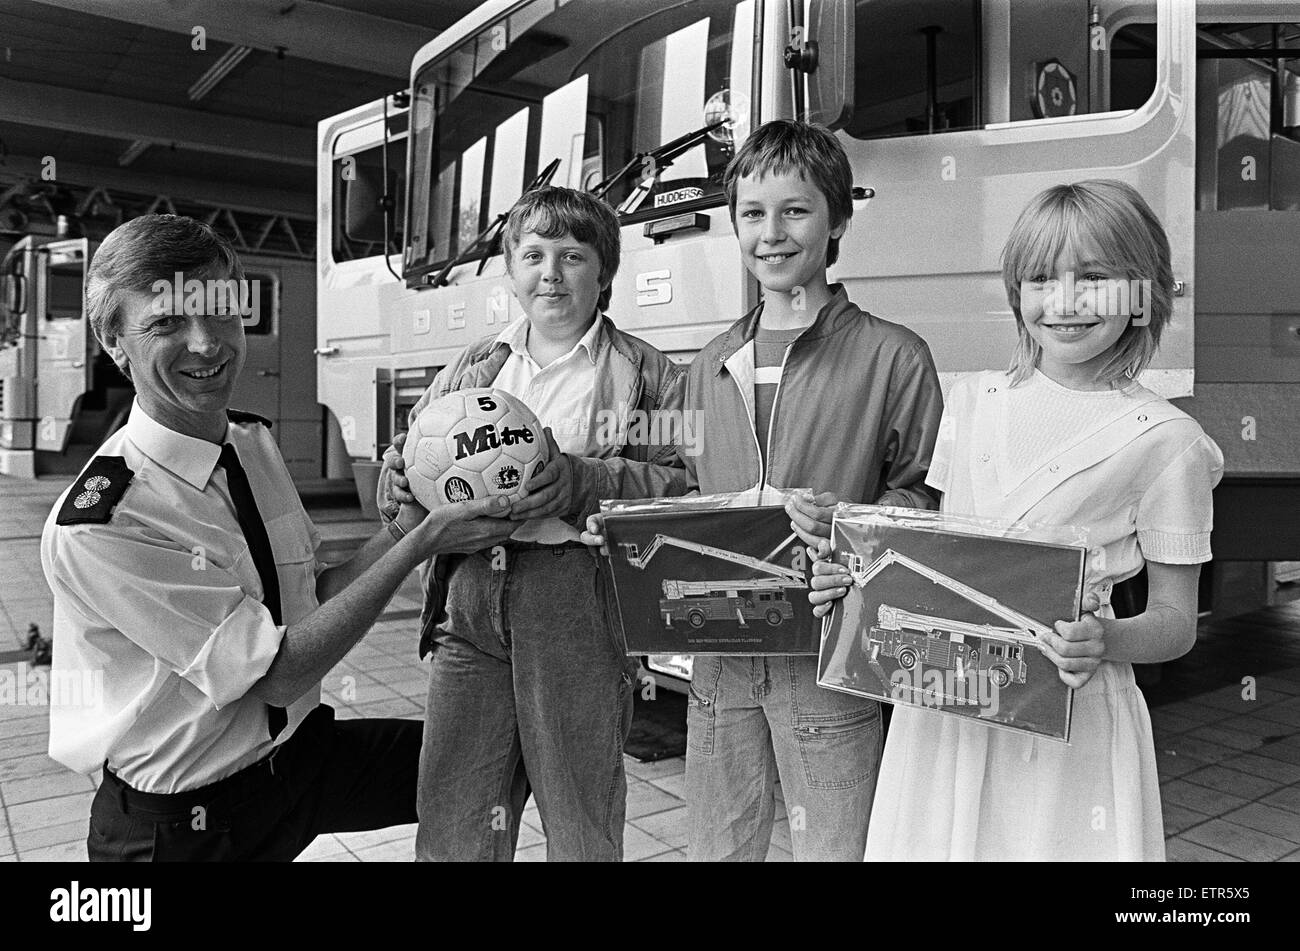 Drei Gewinner des Keep Britain Tidy Wettbewerbe wurden für den Wurf frei Ideen belohnt, wenn sie Huddersfield Feuerwehrhaus besucht.  12 Jahre alte Clair Bulmer von Almondbury gewann einen Wettbewerb um "den Papierkorb zu nennen" von der Gruppe am Almondbury Pfadfinder Gala Tag laufen.  Paul Chirgwin 11 of Almondbury gewann einen Slogan-Wettbewerb von der Keep Britain Tidy Gruppe auf der gleichen Veranstaltung organisiert.  Beide Jugendliche wurden mit Plaketten ausgezeichnet.  Ein weiterer Gewinner war Jonathan McAllister 13 der Honley, die mit einem Fußball, unterzeichnet von Huddersfield Town Football vorgestellt wurde - der Preis in einen ähnlichen Wettbewerb laufen laufen während der Stockfoto